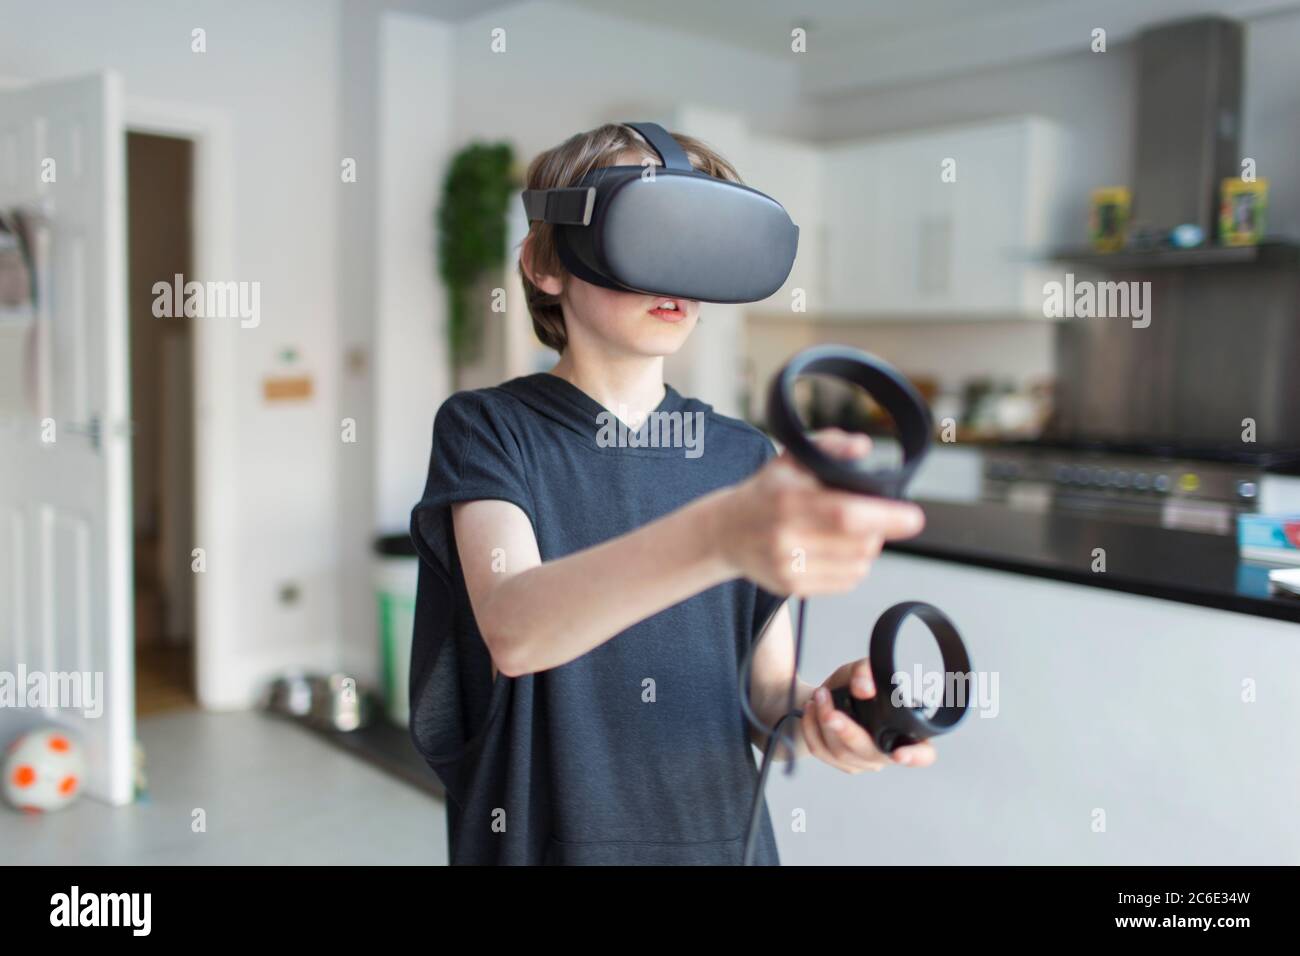 Junge mit VRS Brille spielen Videospiel Stockfoto